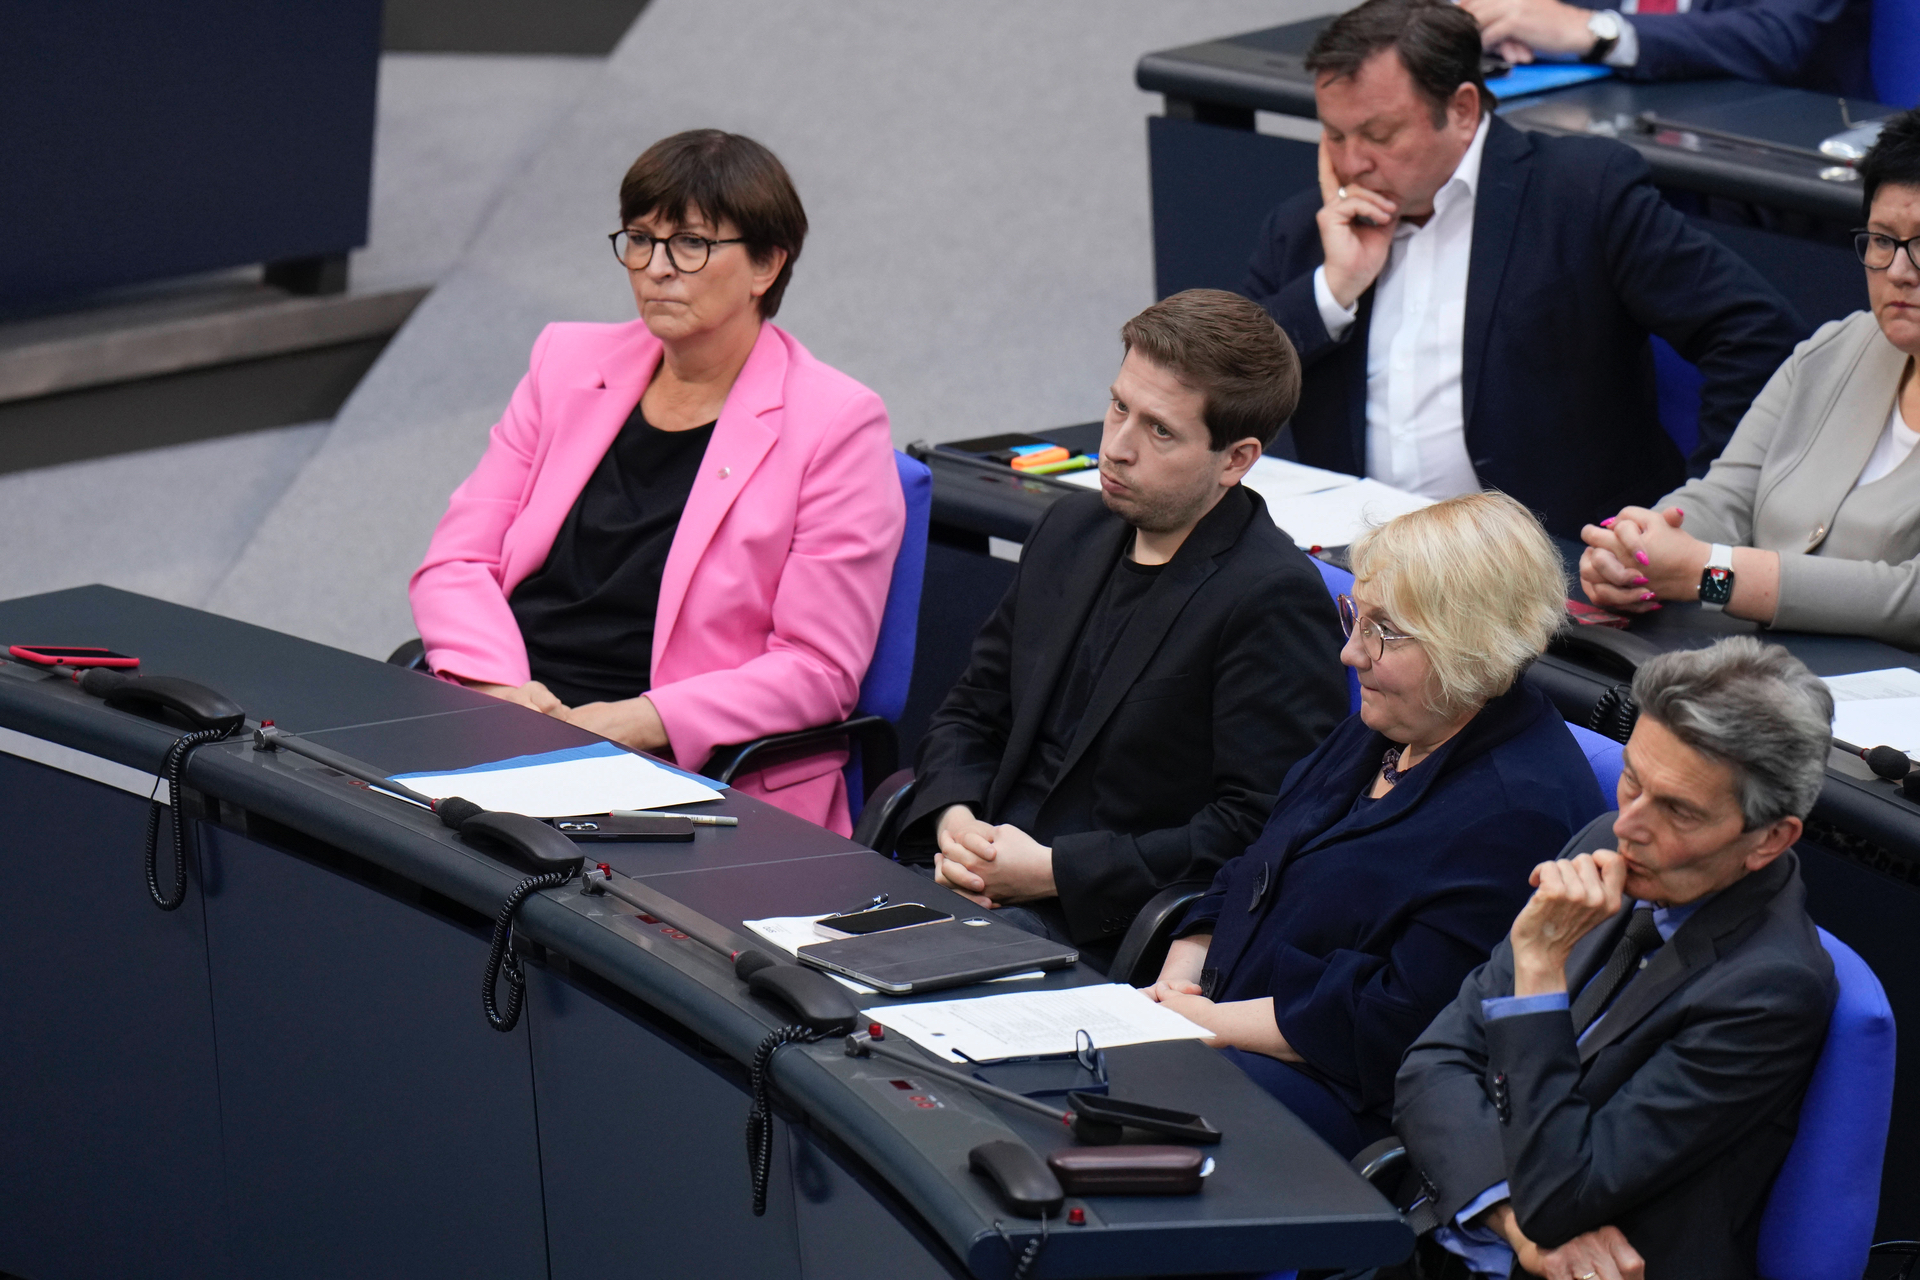 Suchen die Schuld für die mangelnde Akzeptanz bei den Wählern nicht bei sich, sondern bei den politischen Wettbewerbern: Die Spitzen der deutschen Sozialdemokratie